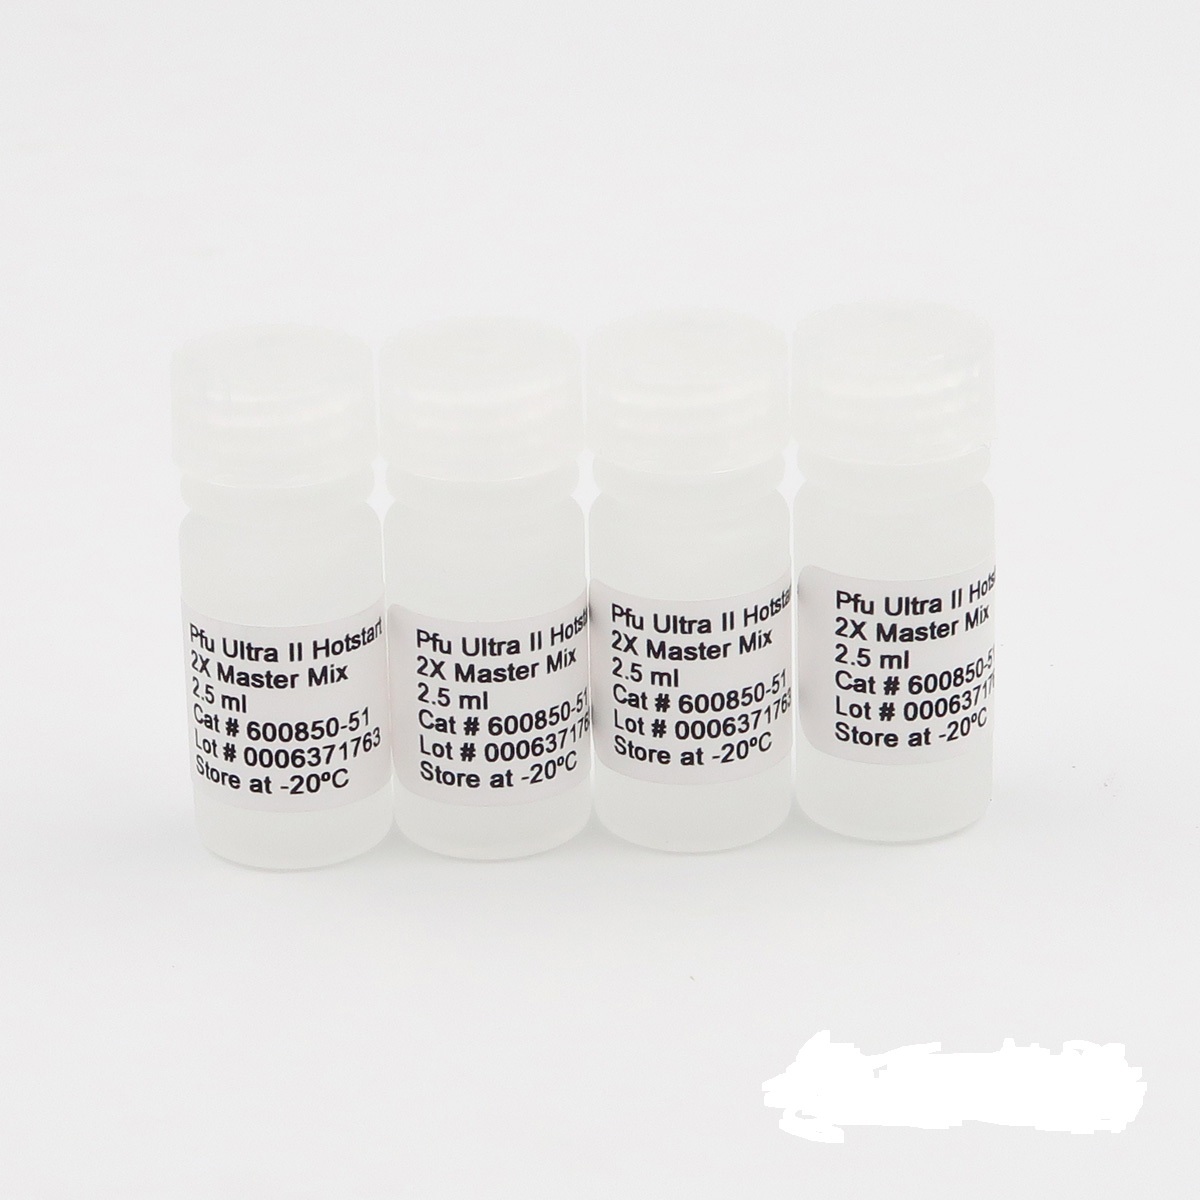 七星库道虫染料法荧光定量PCR试剂盒